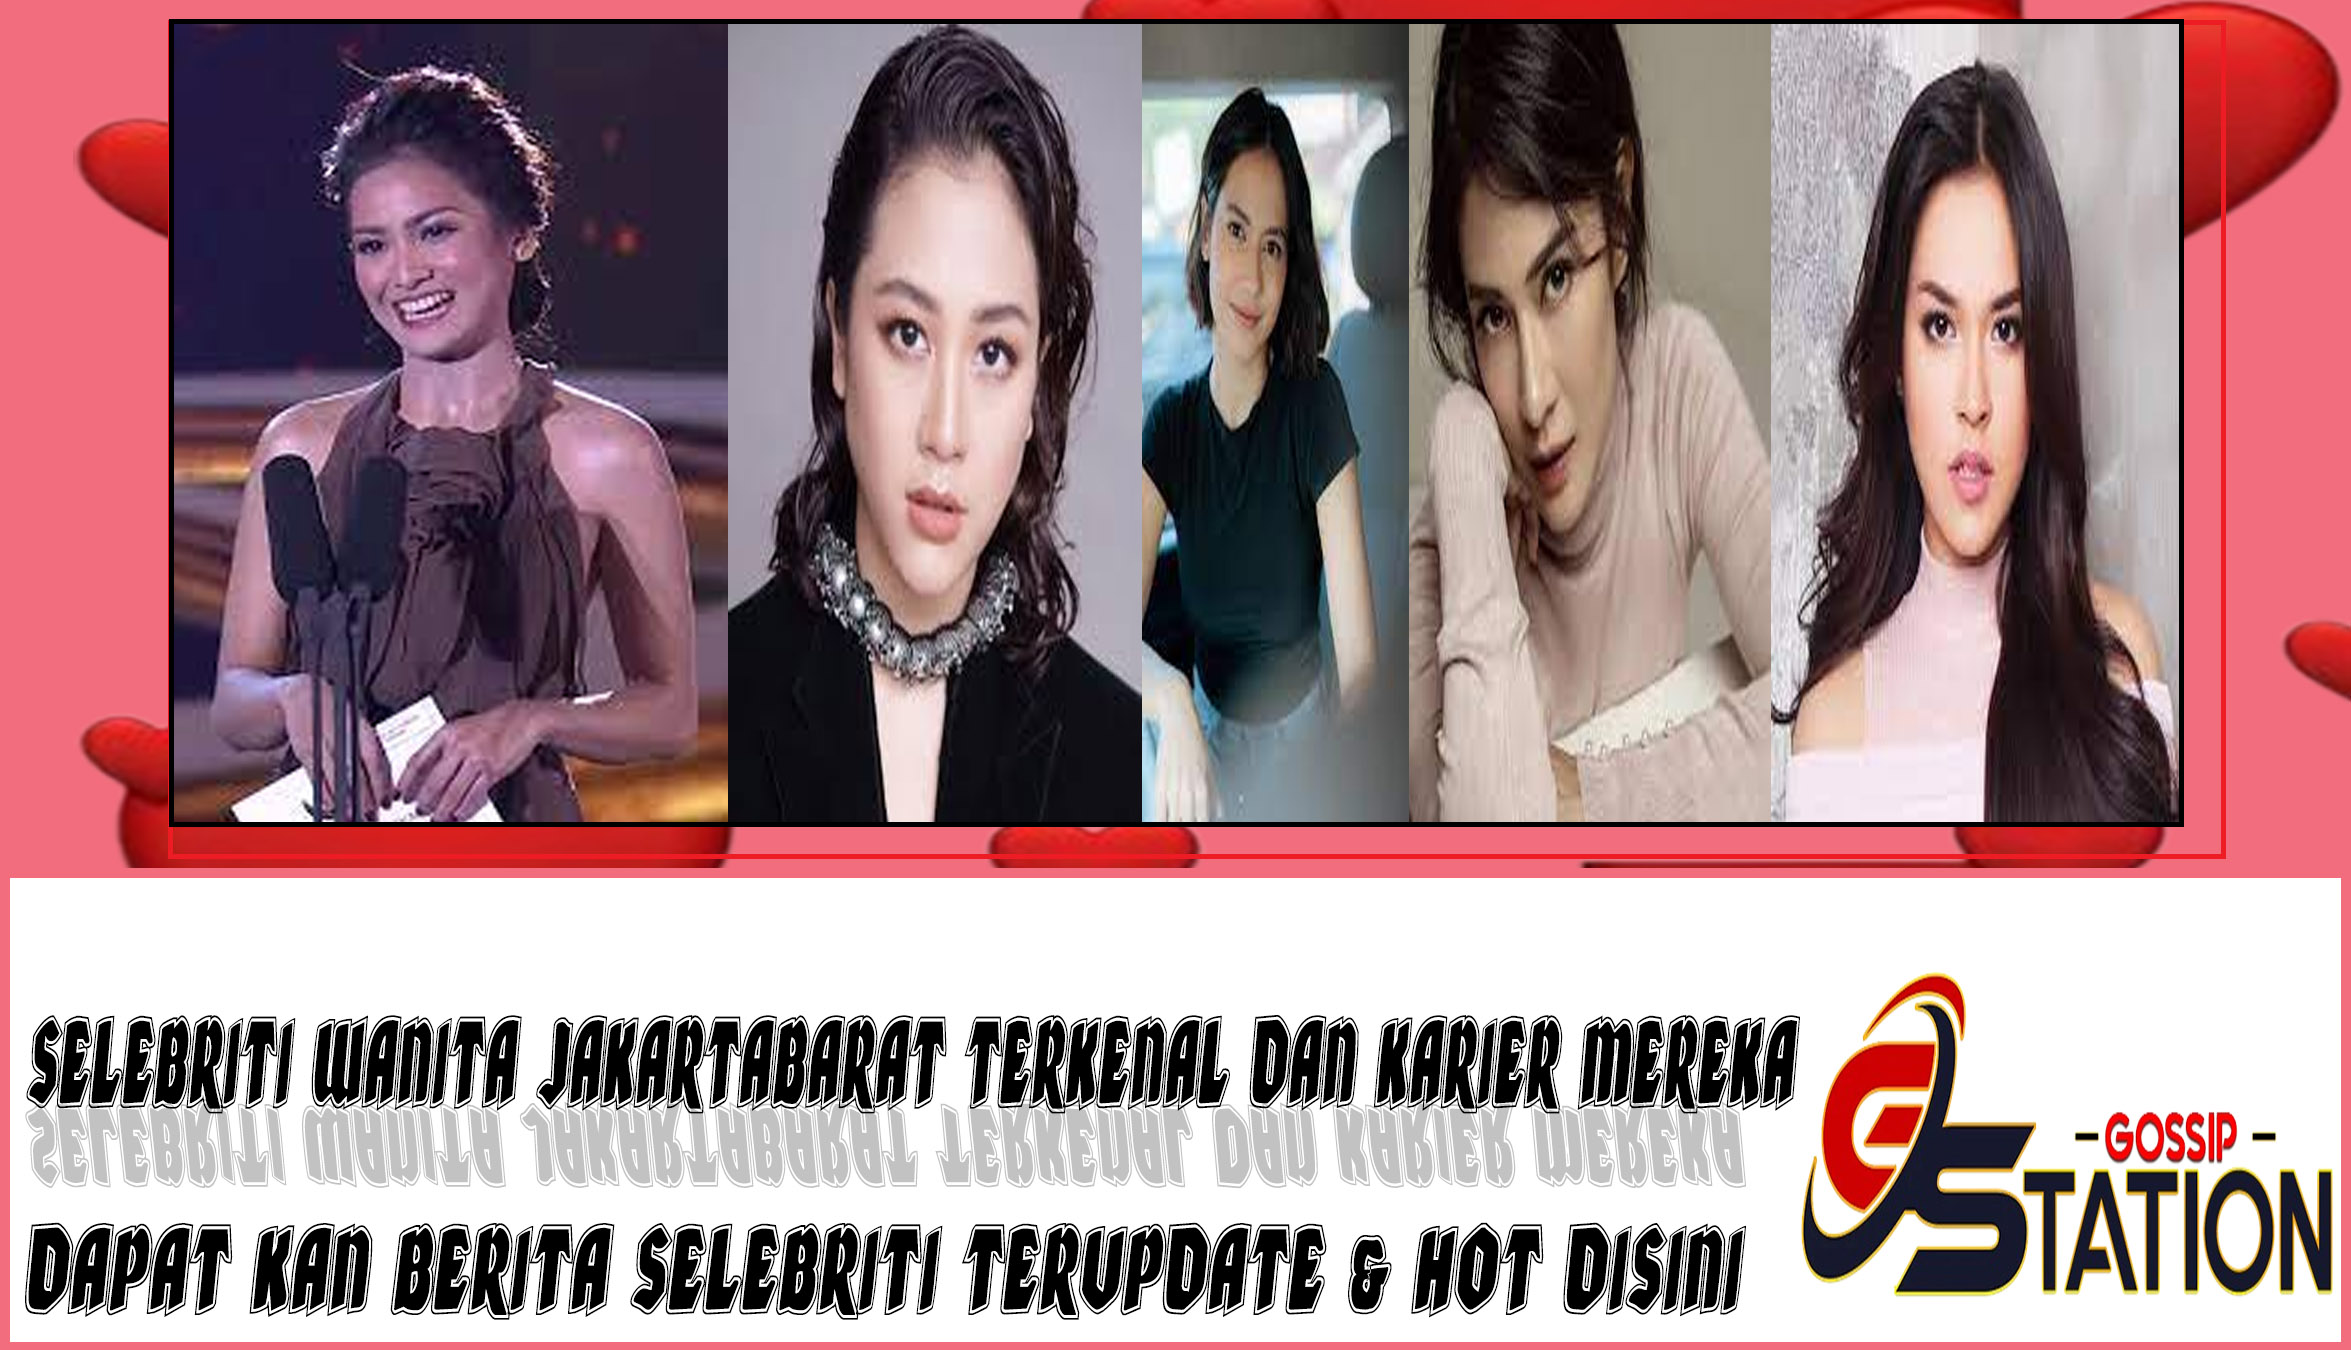 5 Selebriti Wanita JakartaBarat